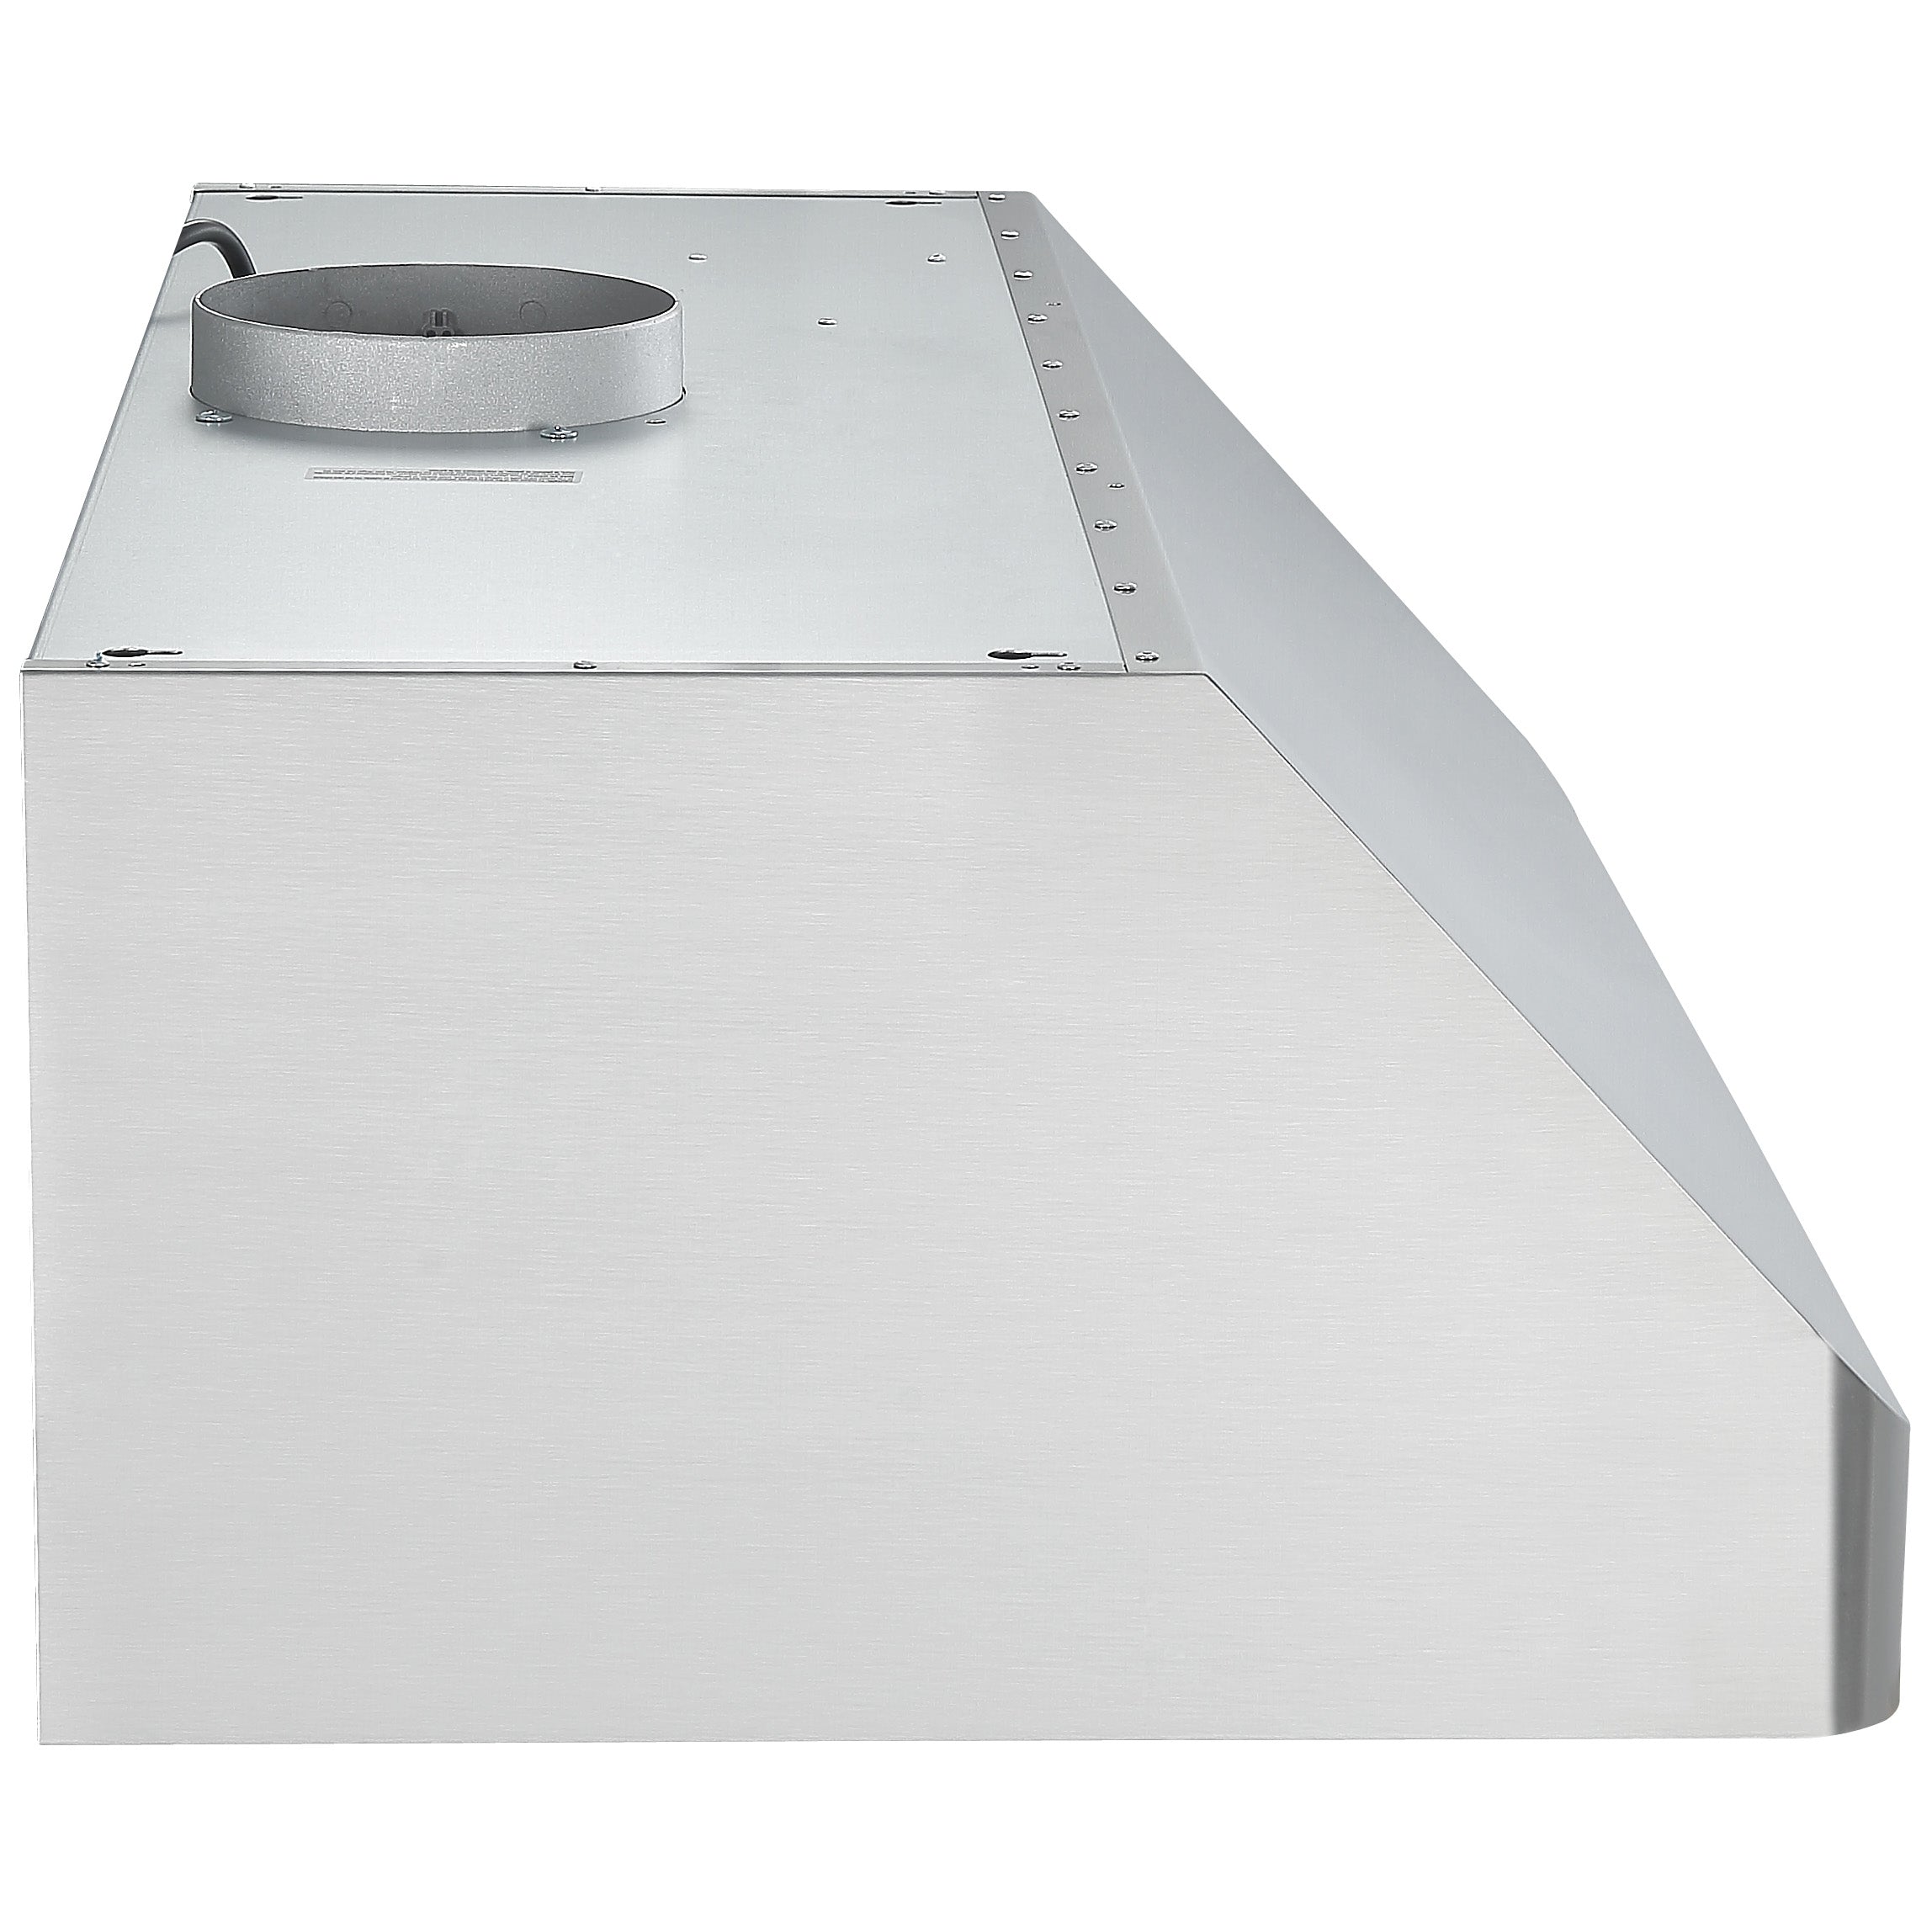 Hotte de cuisine en acier inoxydable à installation sous l’armoire Pro Série d’Ancona de 90 cm (36 po) avec veilleuse